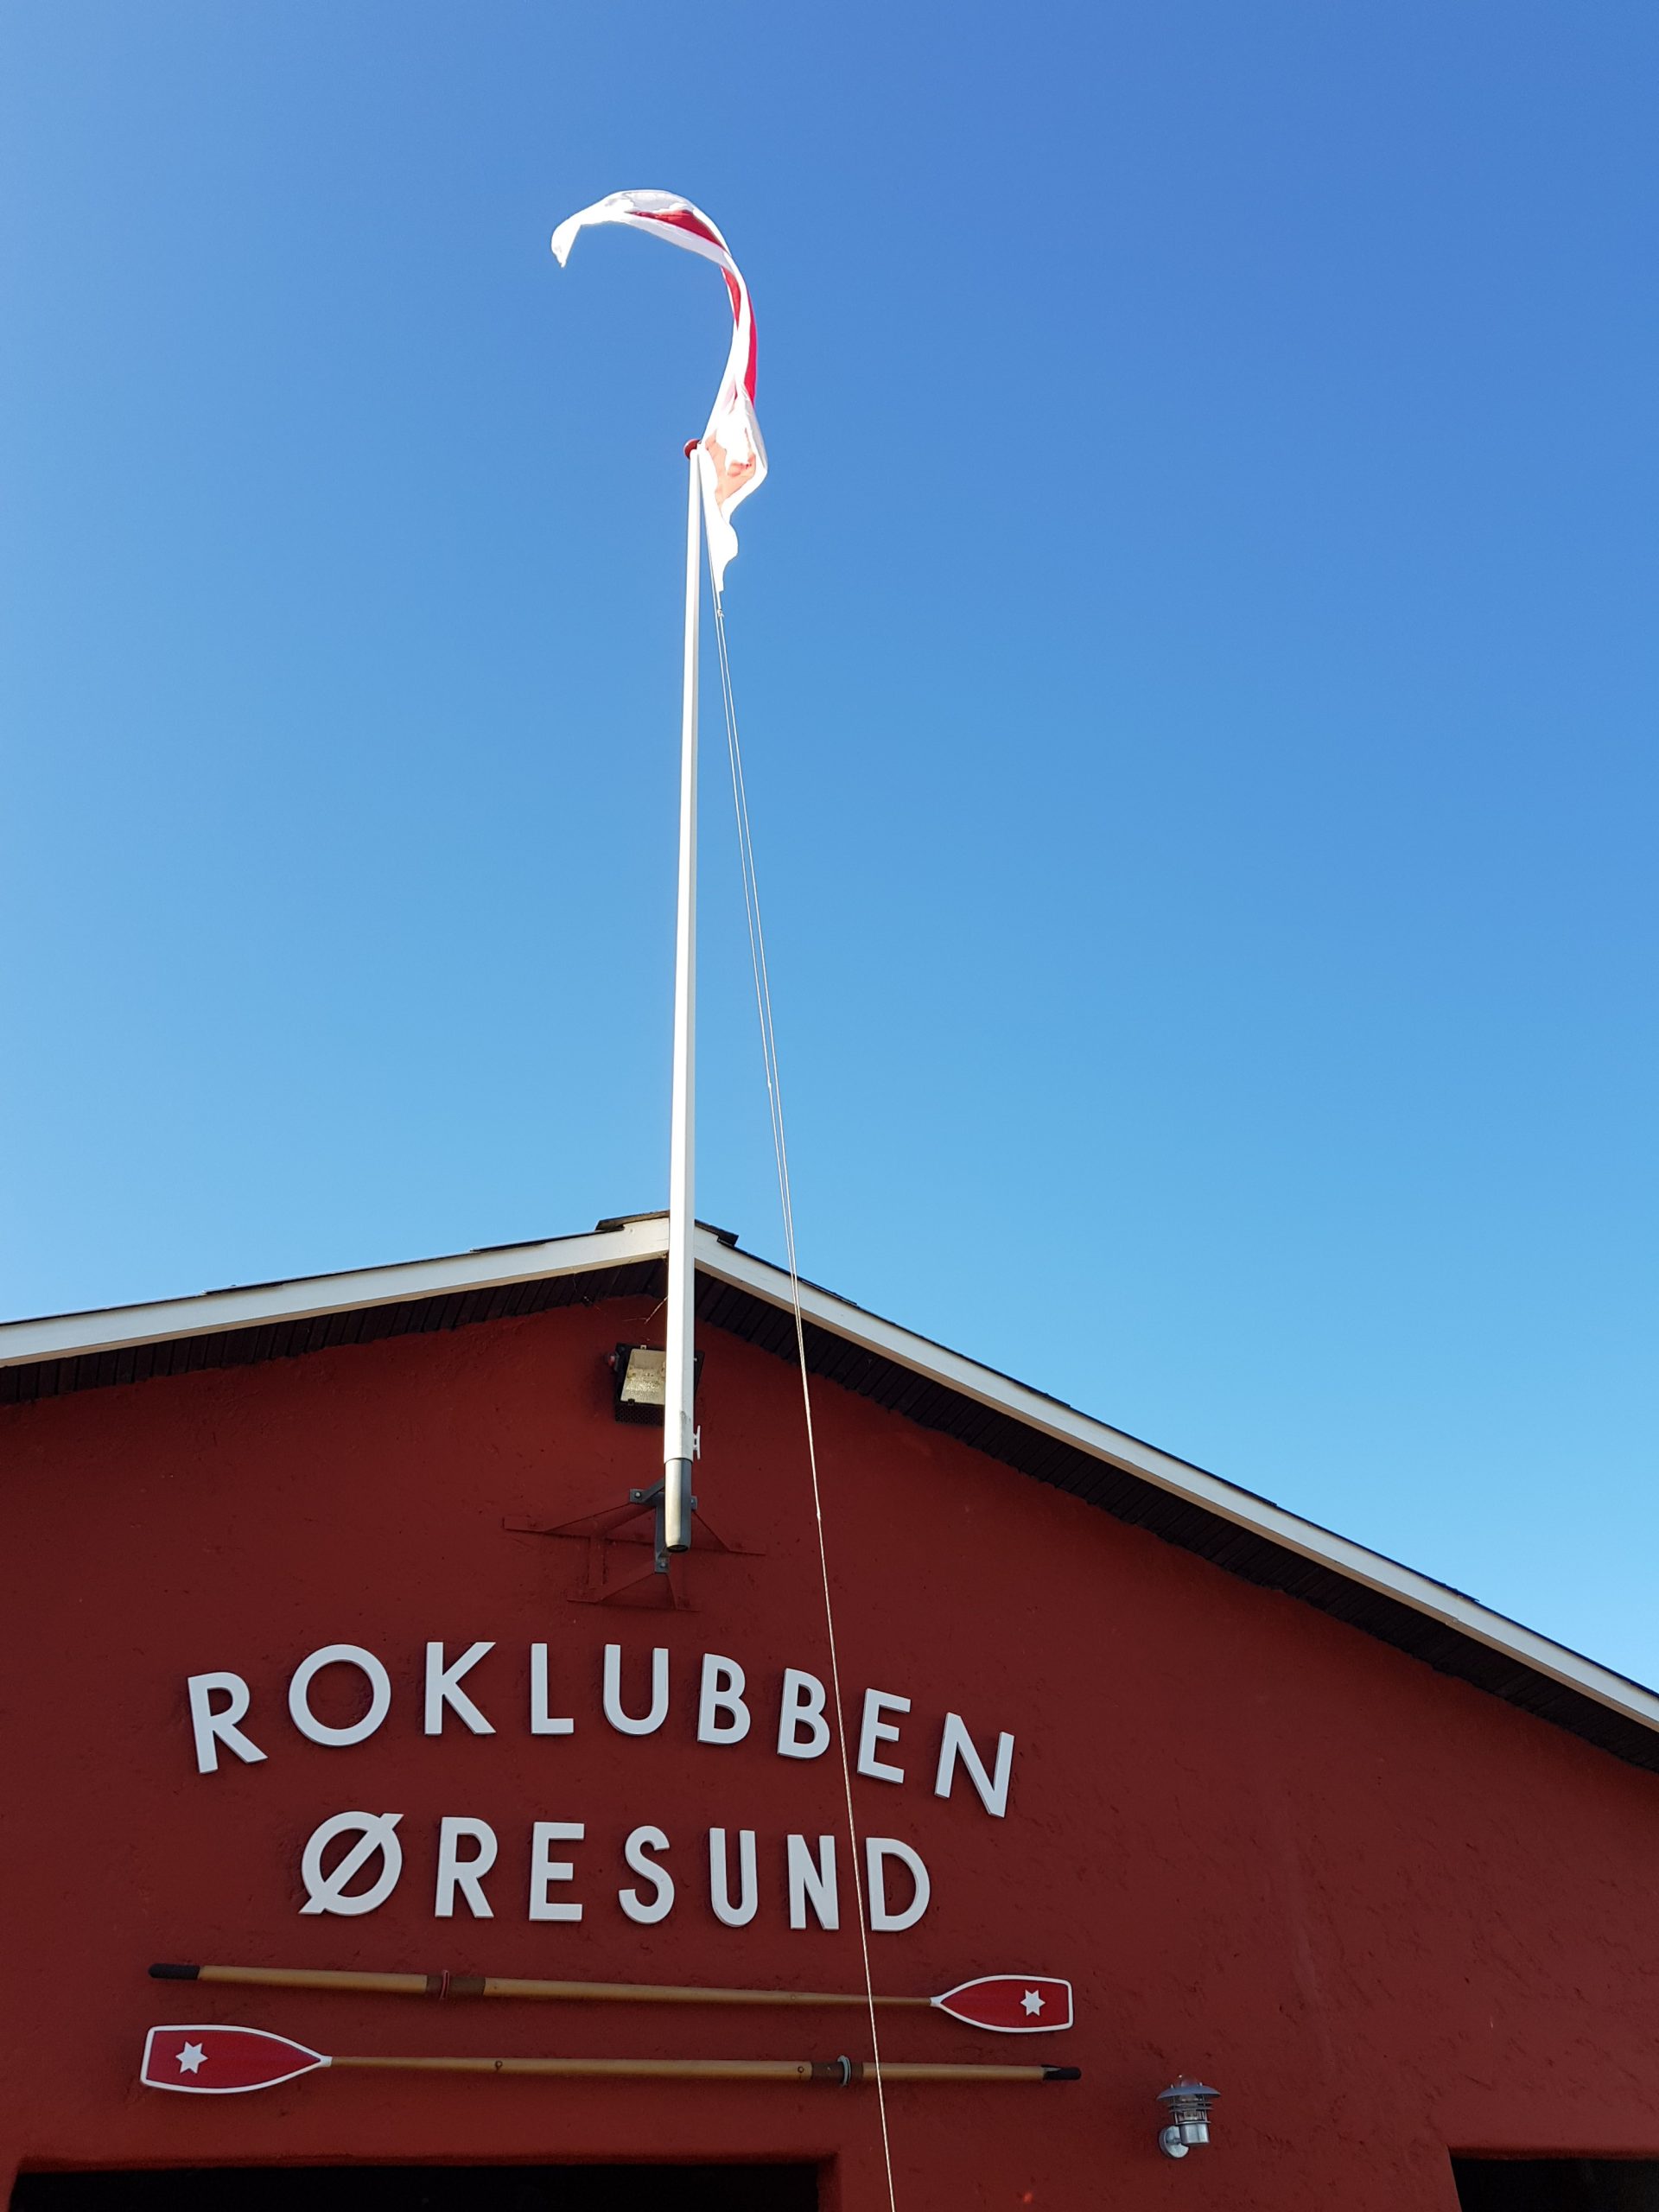 Lidt om Roklubben Øresund og roning